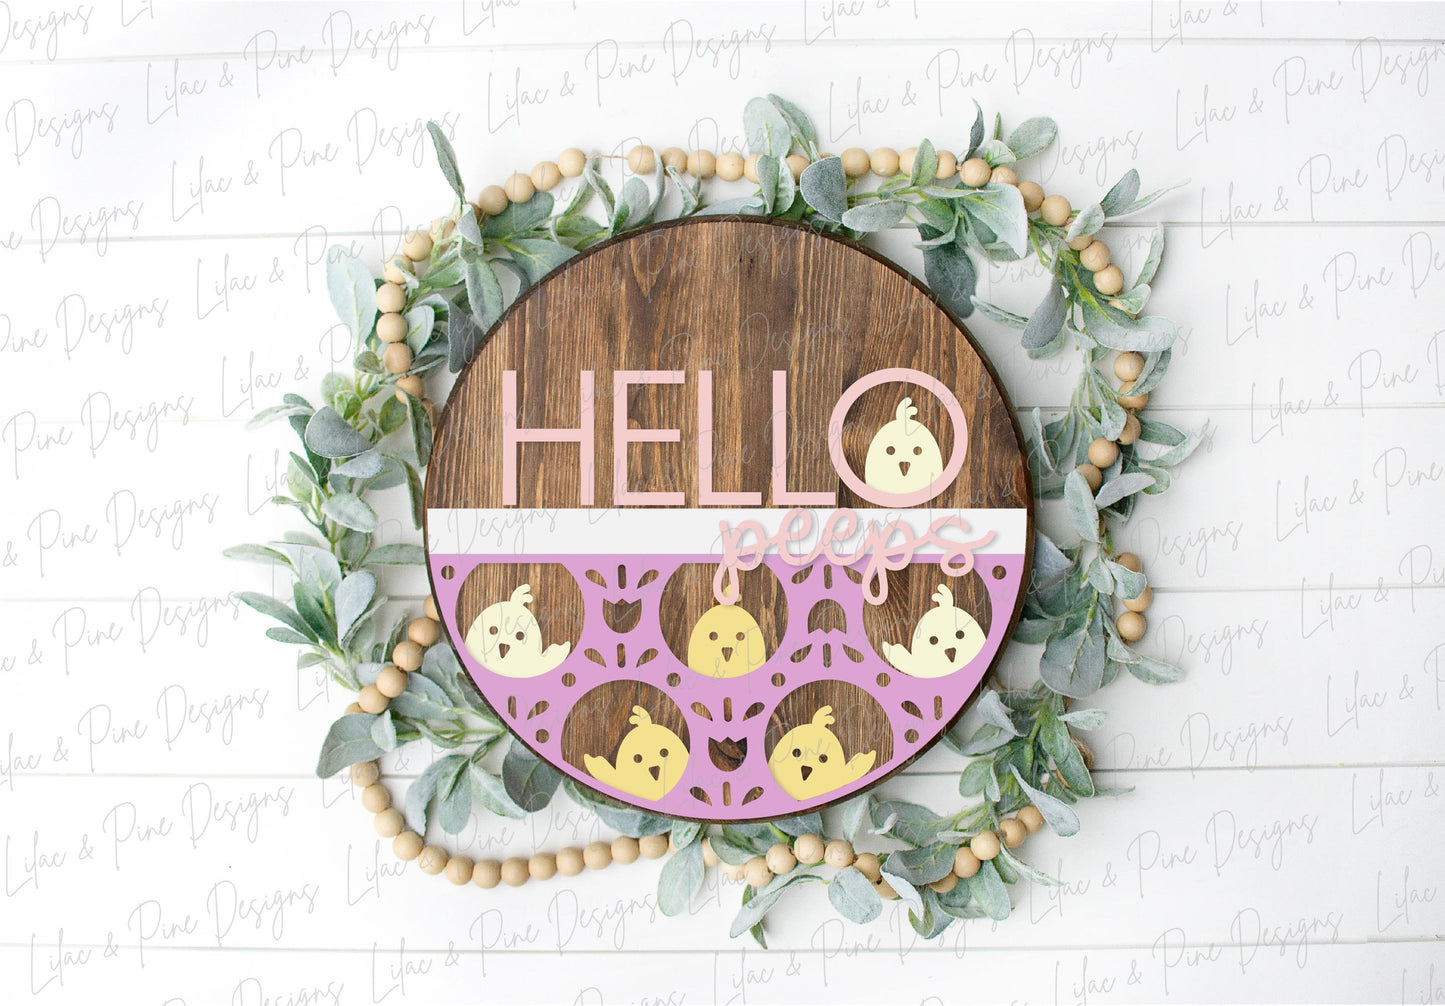 Hello Peeps door hanger, Easter welcome sign SVG, cute Easter chick SVG, Spring chicken laser design, Glowforge SVG, laser cut file